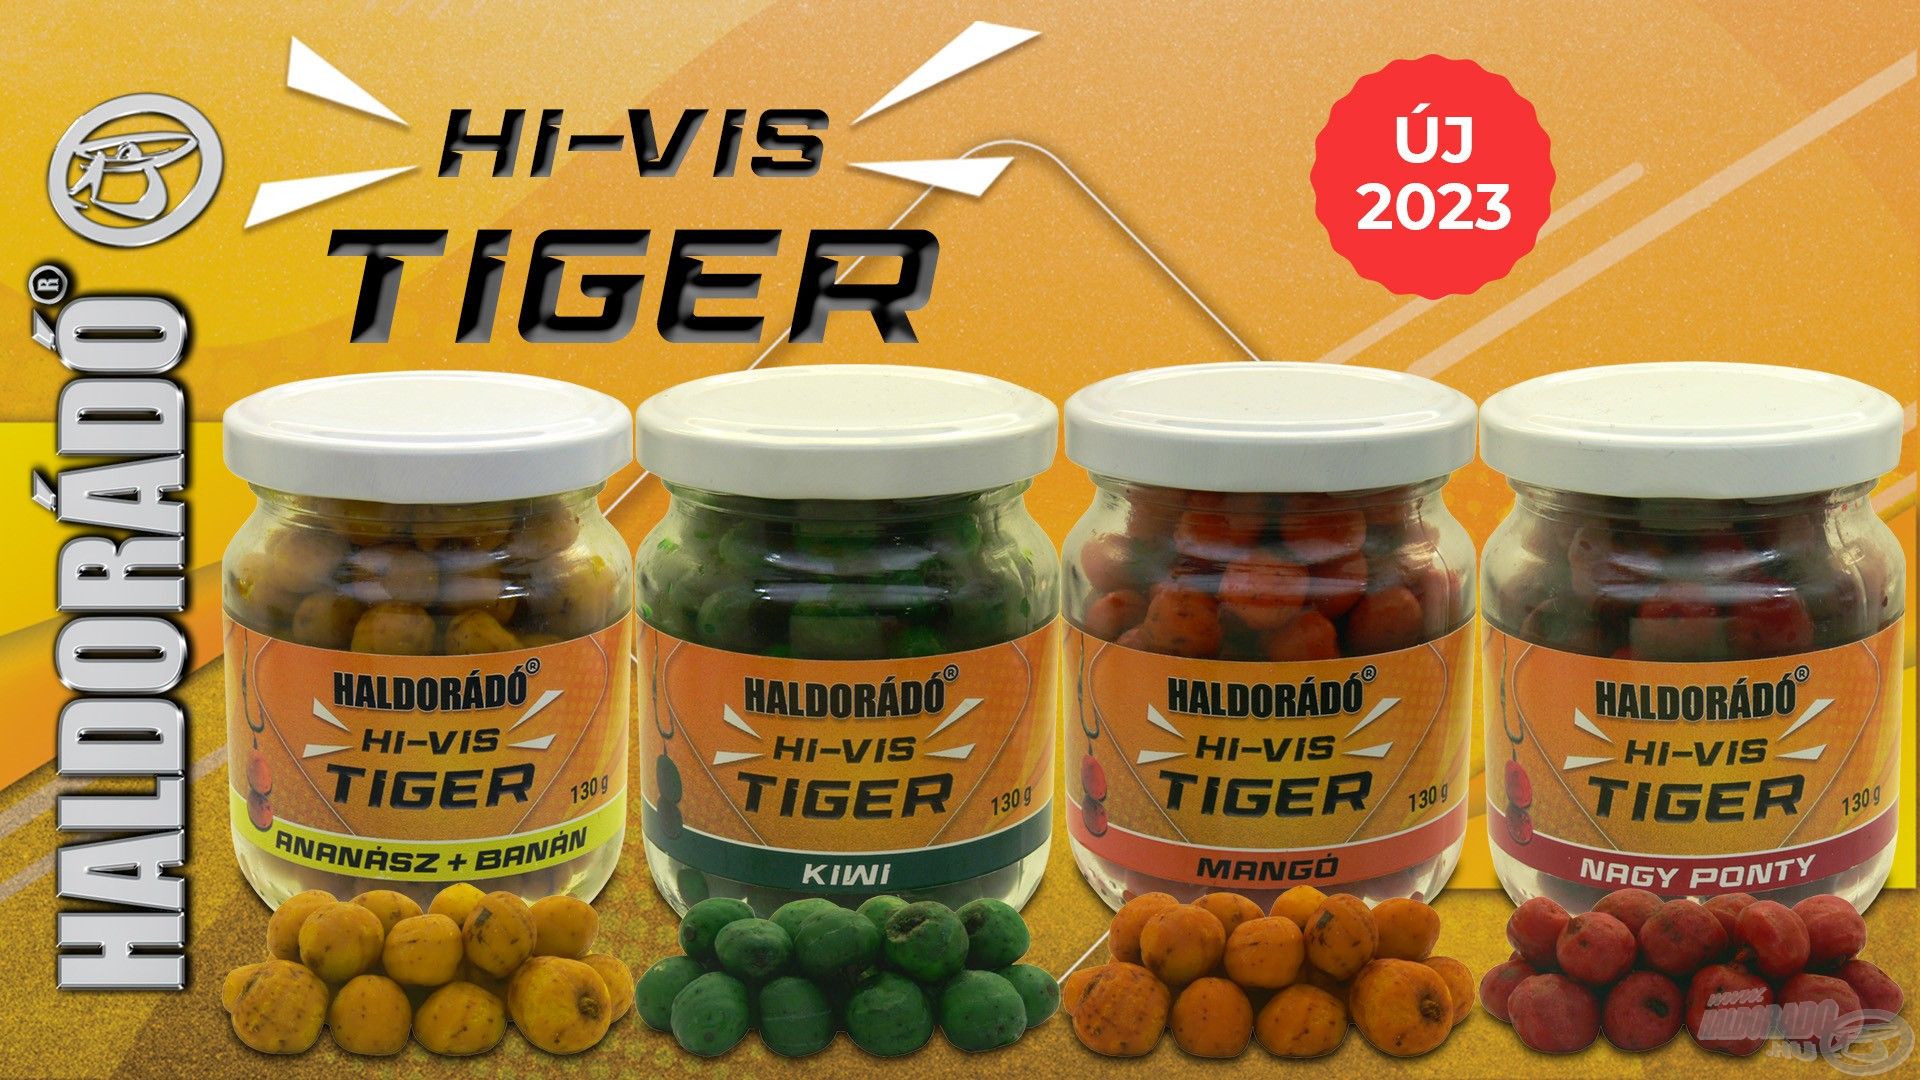 Íme, a Haldorádó Hi-Vis Tiger termékcsalád!